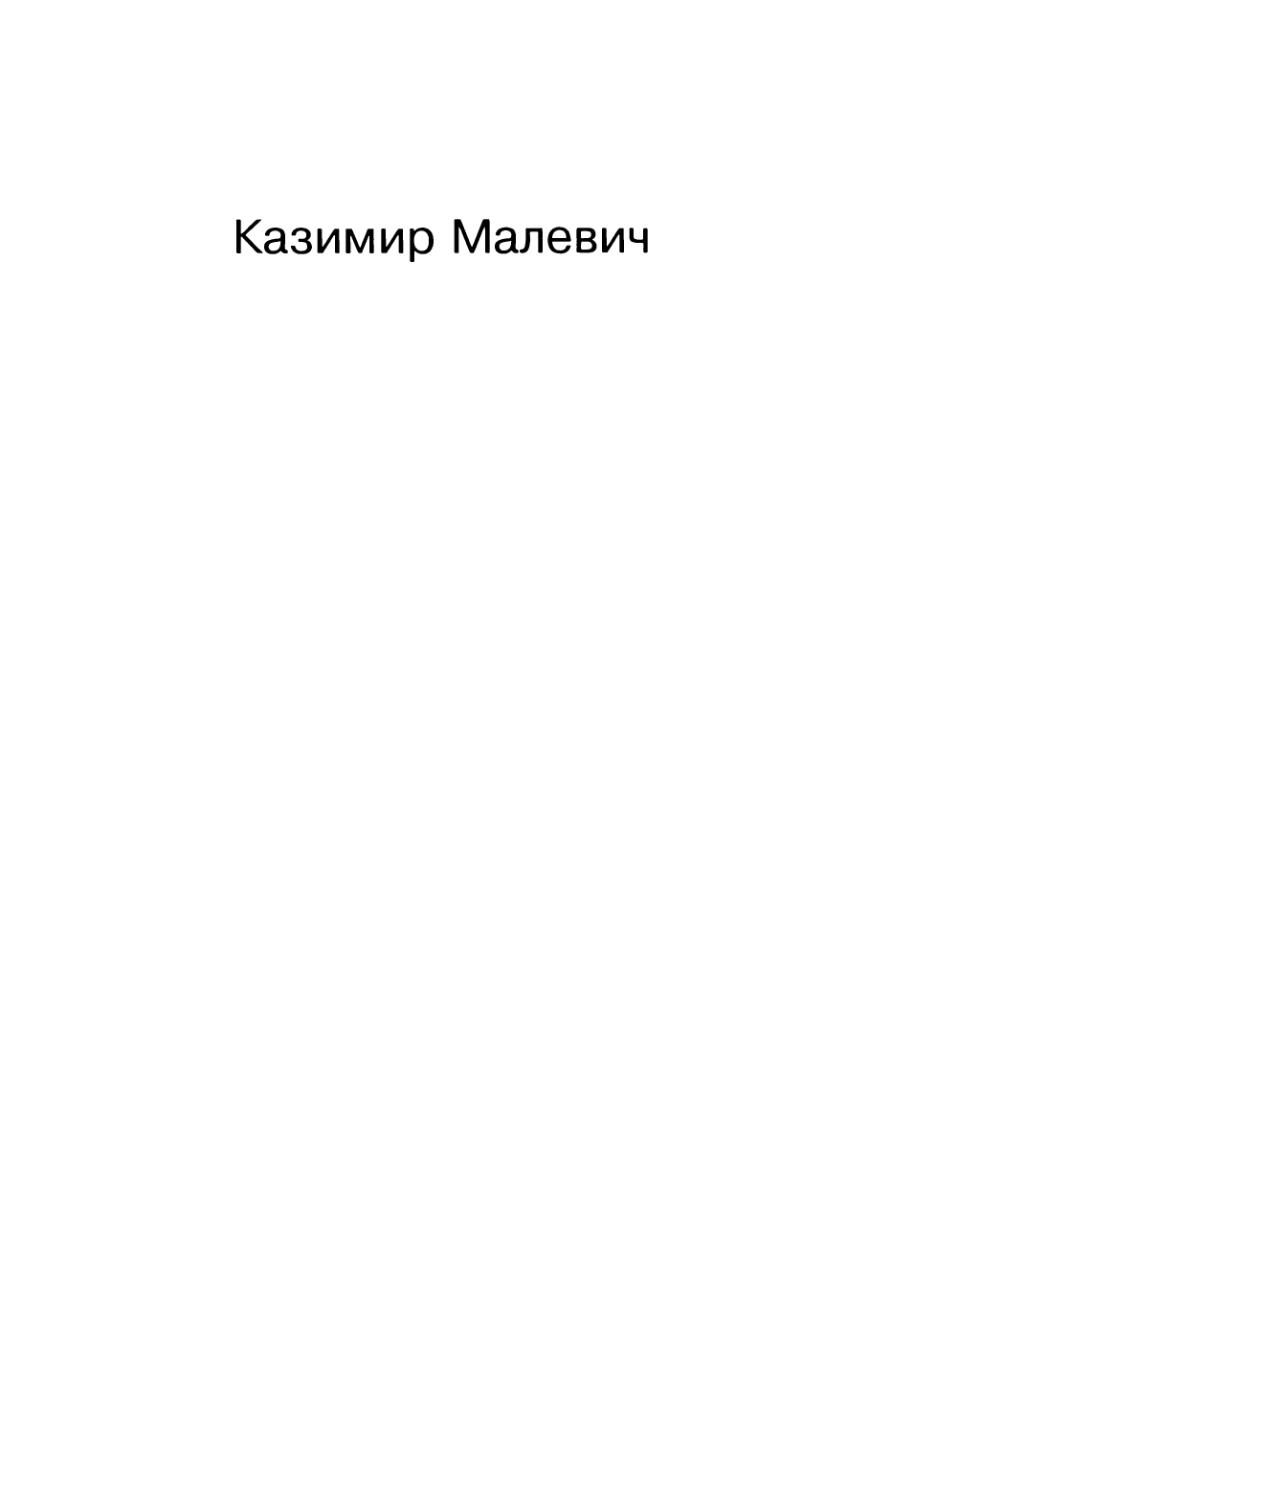 Малевич К. Том 1. Статьи, манифесты, теоретические сочинения и другие работы. 1913-1929 - 1995